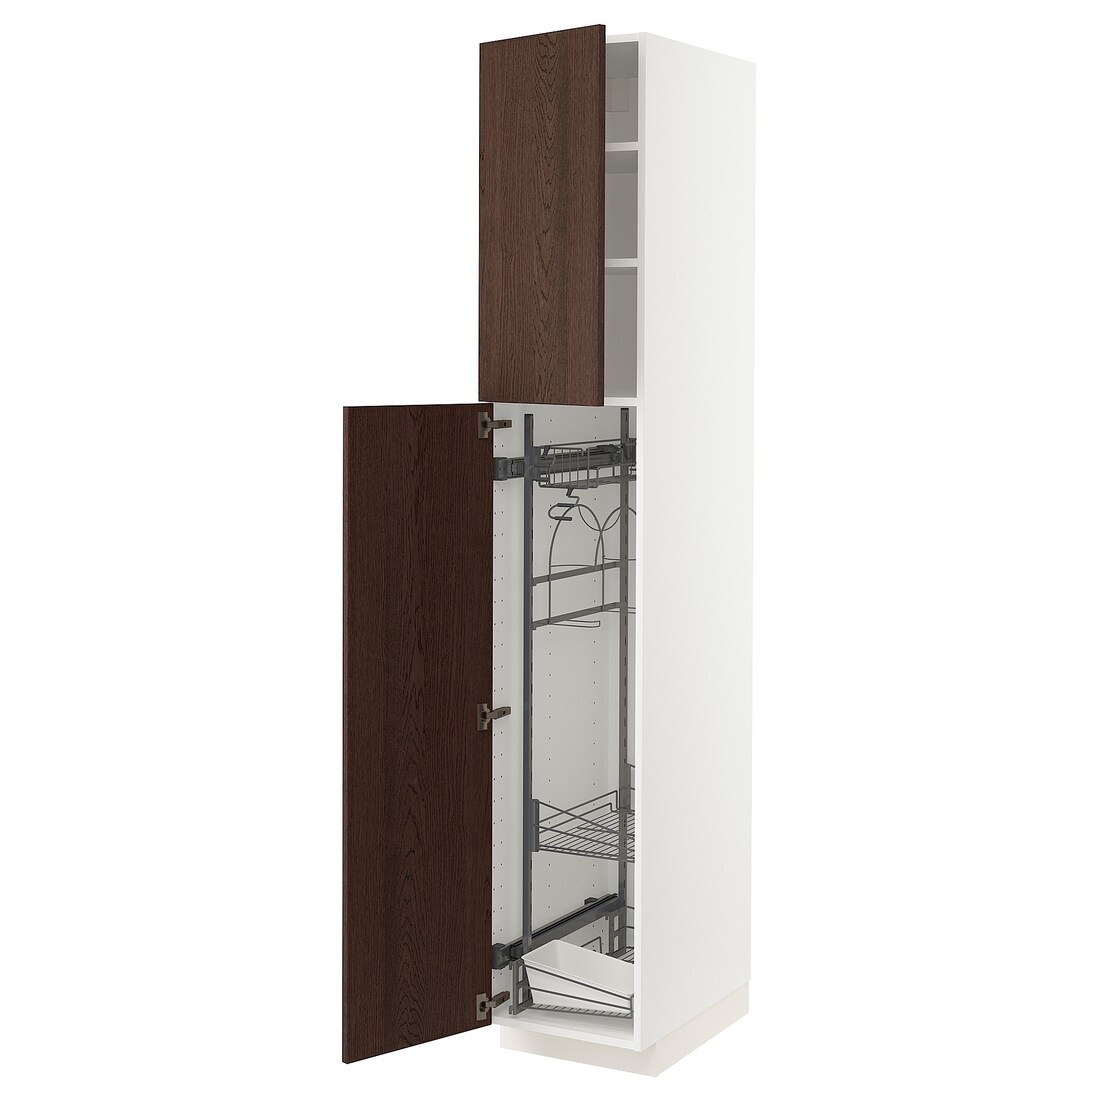 METOD МЕТОД Высокий шкаф с отделением для аксессуаров для уборки, белый / Sinarp коричневый, 40x60x220 см